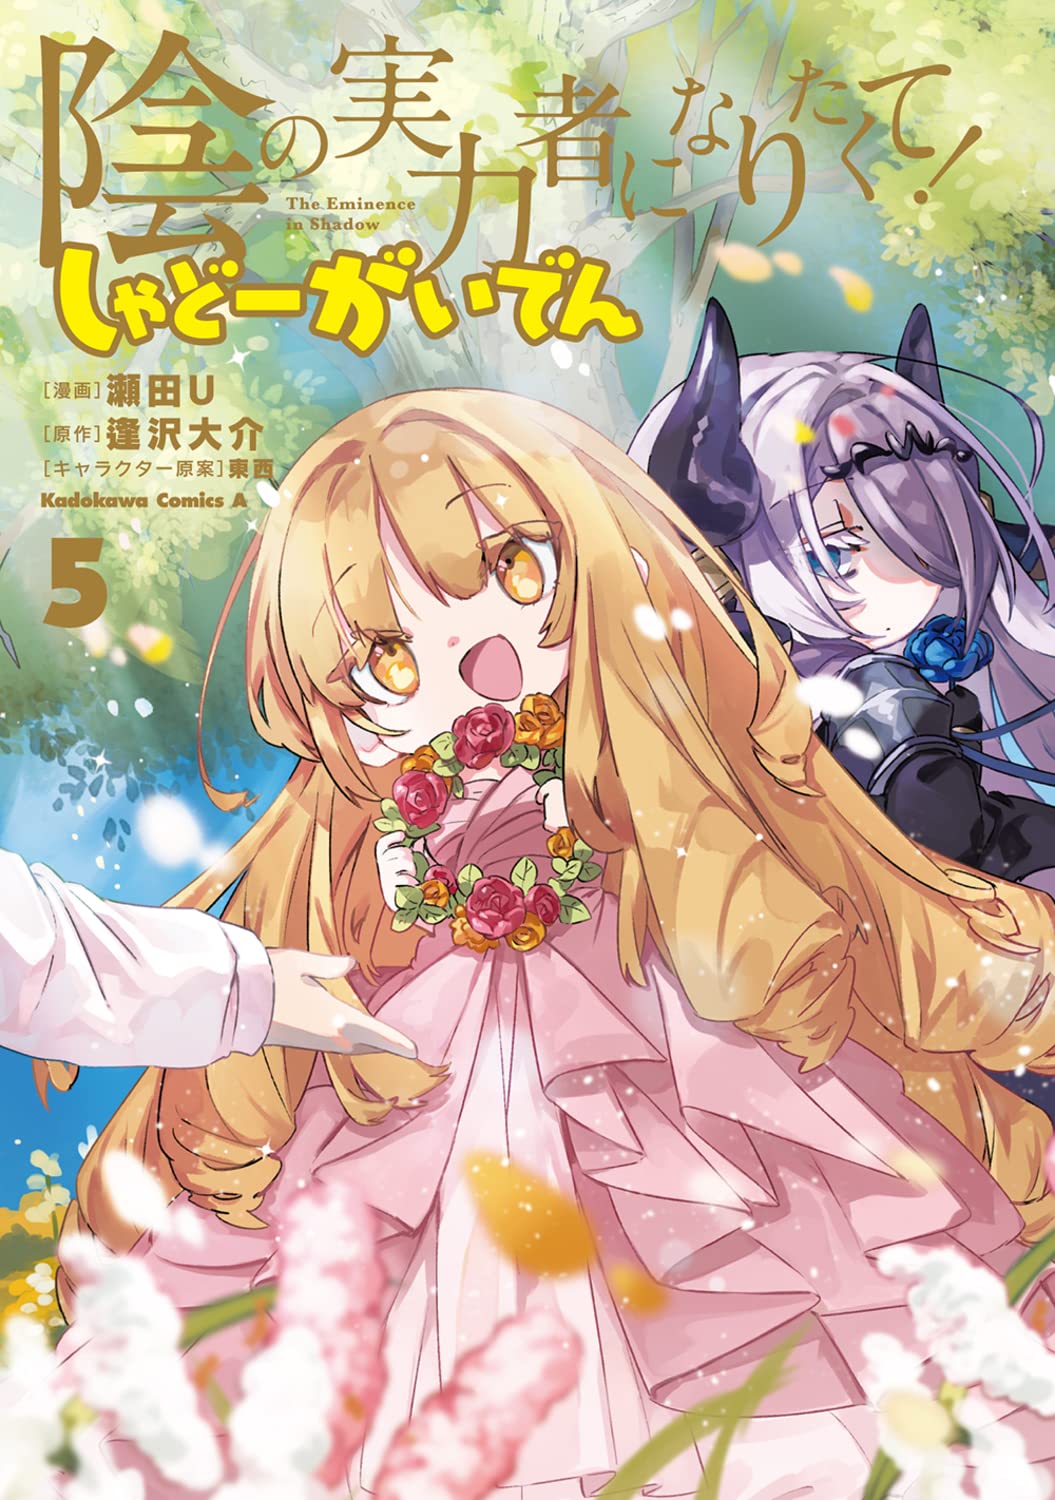 The Eminence in Shadow Vol. 1-11 JP Manga Kage no Jitsuryokusha ni  Naritakute!